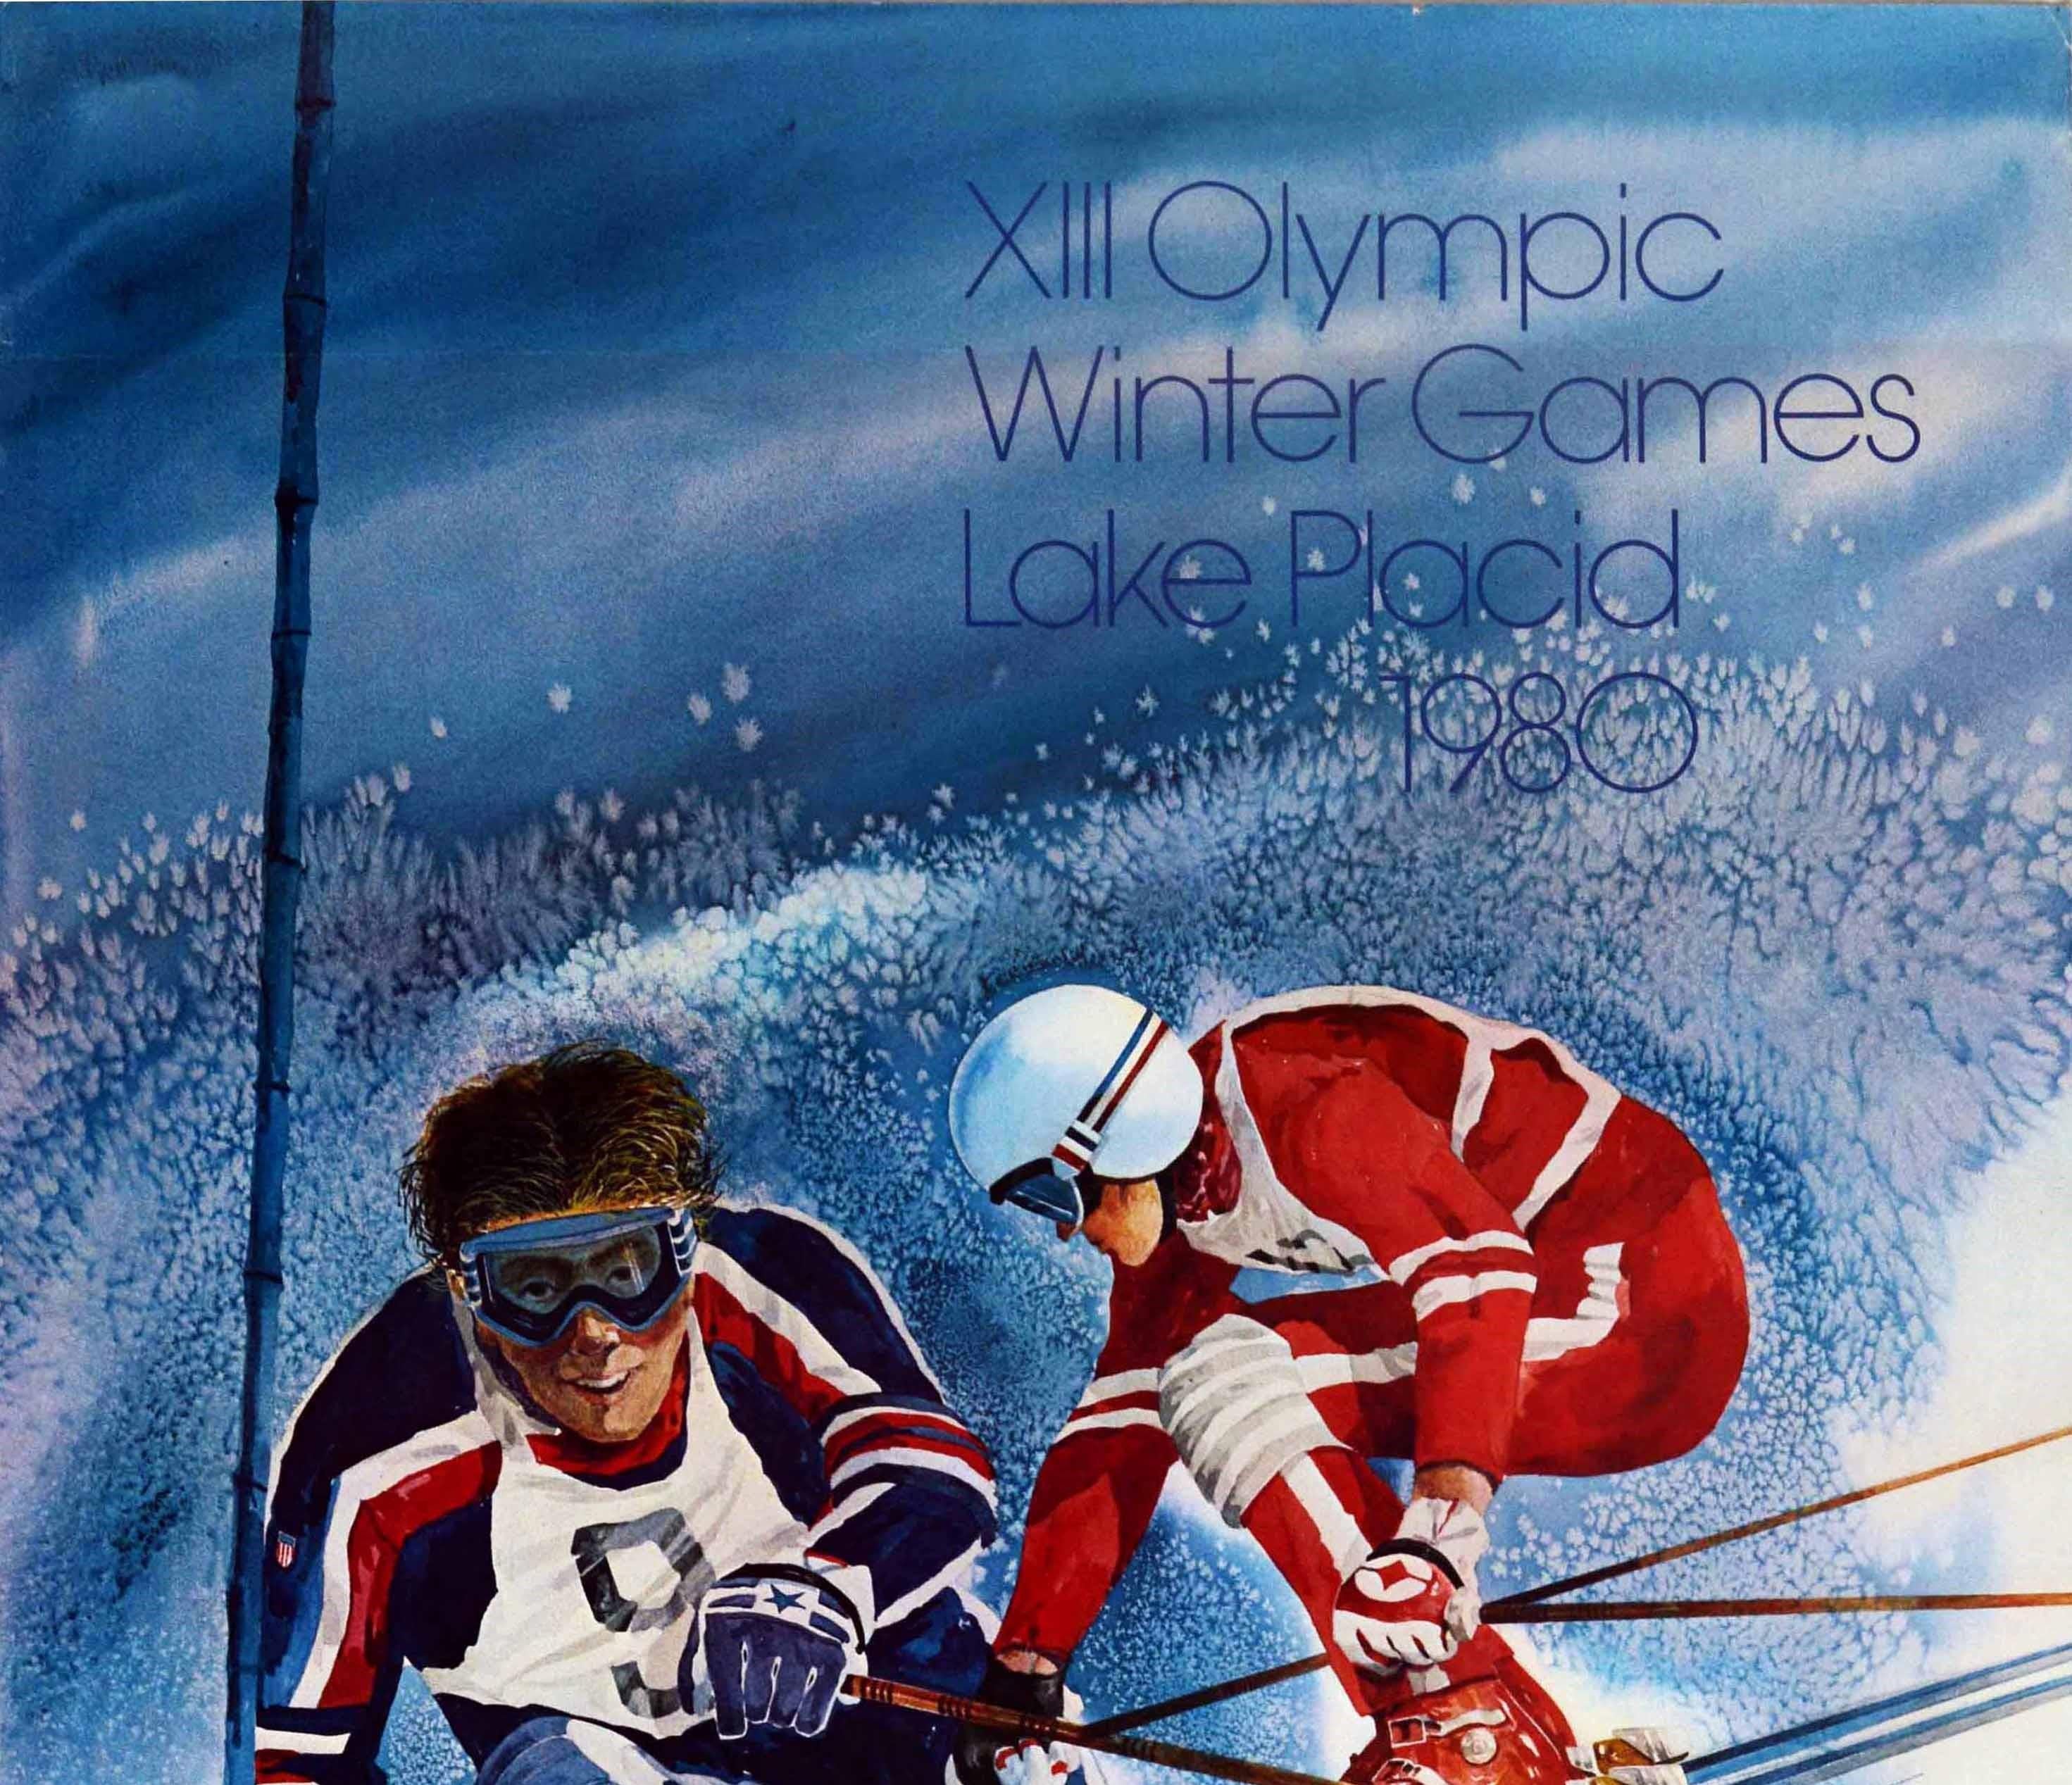 Affiche publicitaire originale pour les XIIIe Jeux Olympiques d'hiver de Lake Placid 1980, qui se sont déroulés à New York (États-Unis) du 13 au 24 février. Cette affiche présente une illustration dynamique de deux skieurs vêtus de combinaisons de